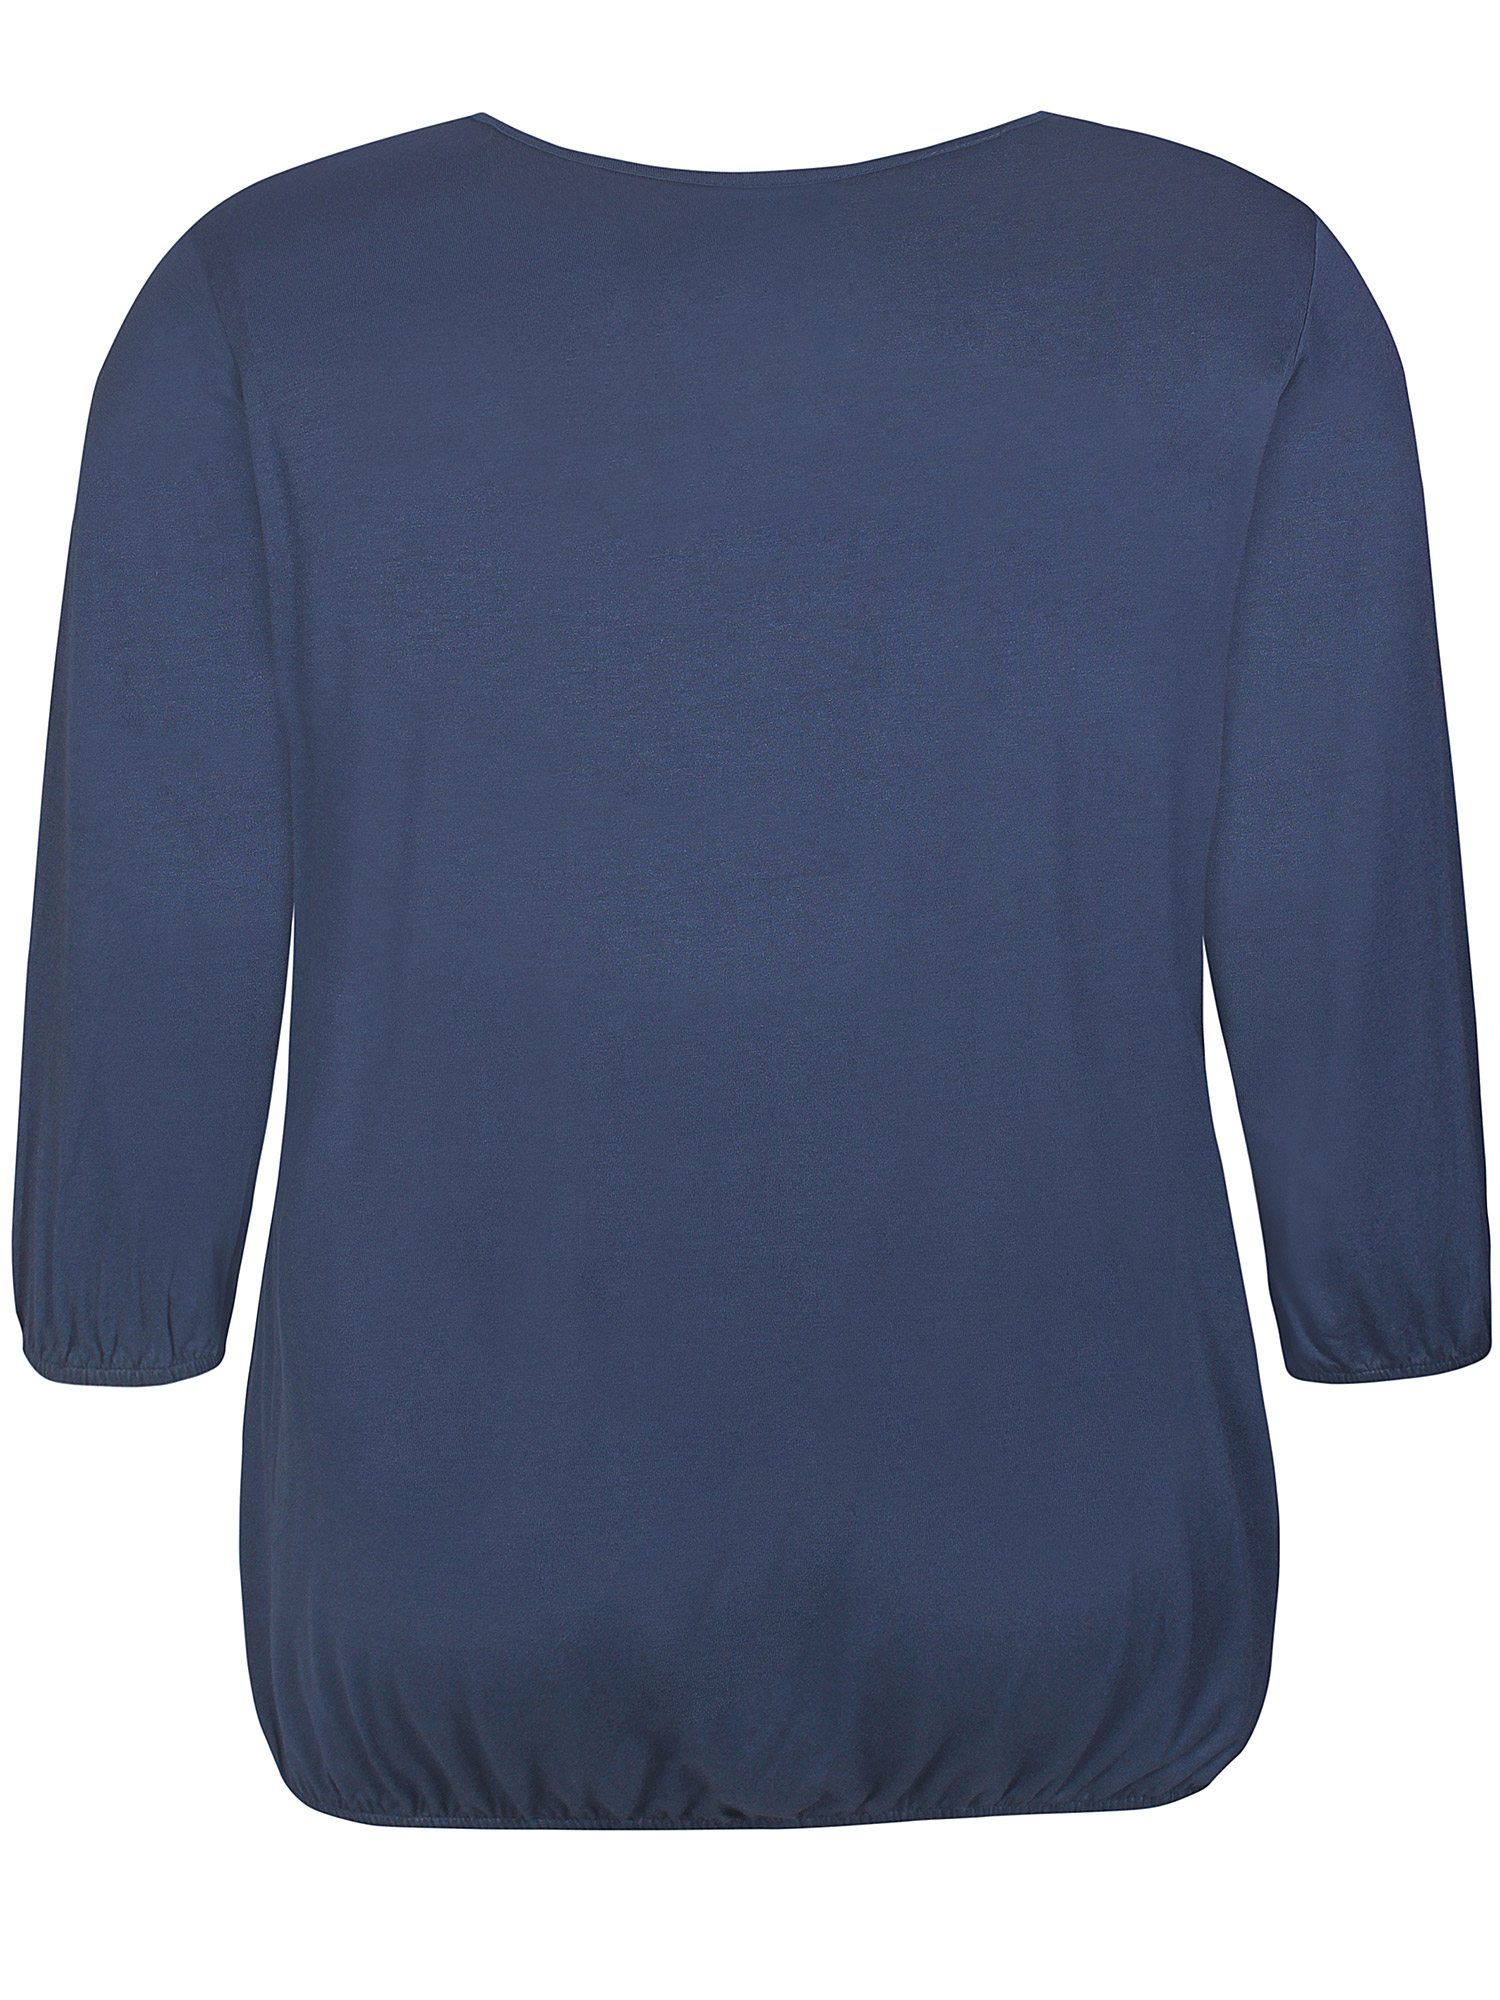 GIRO - Lækker blå jersey bluse med elastik kant og v-hals fra Zhenzi